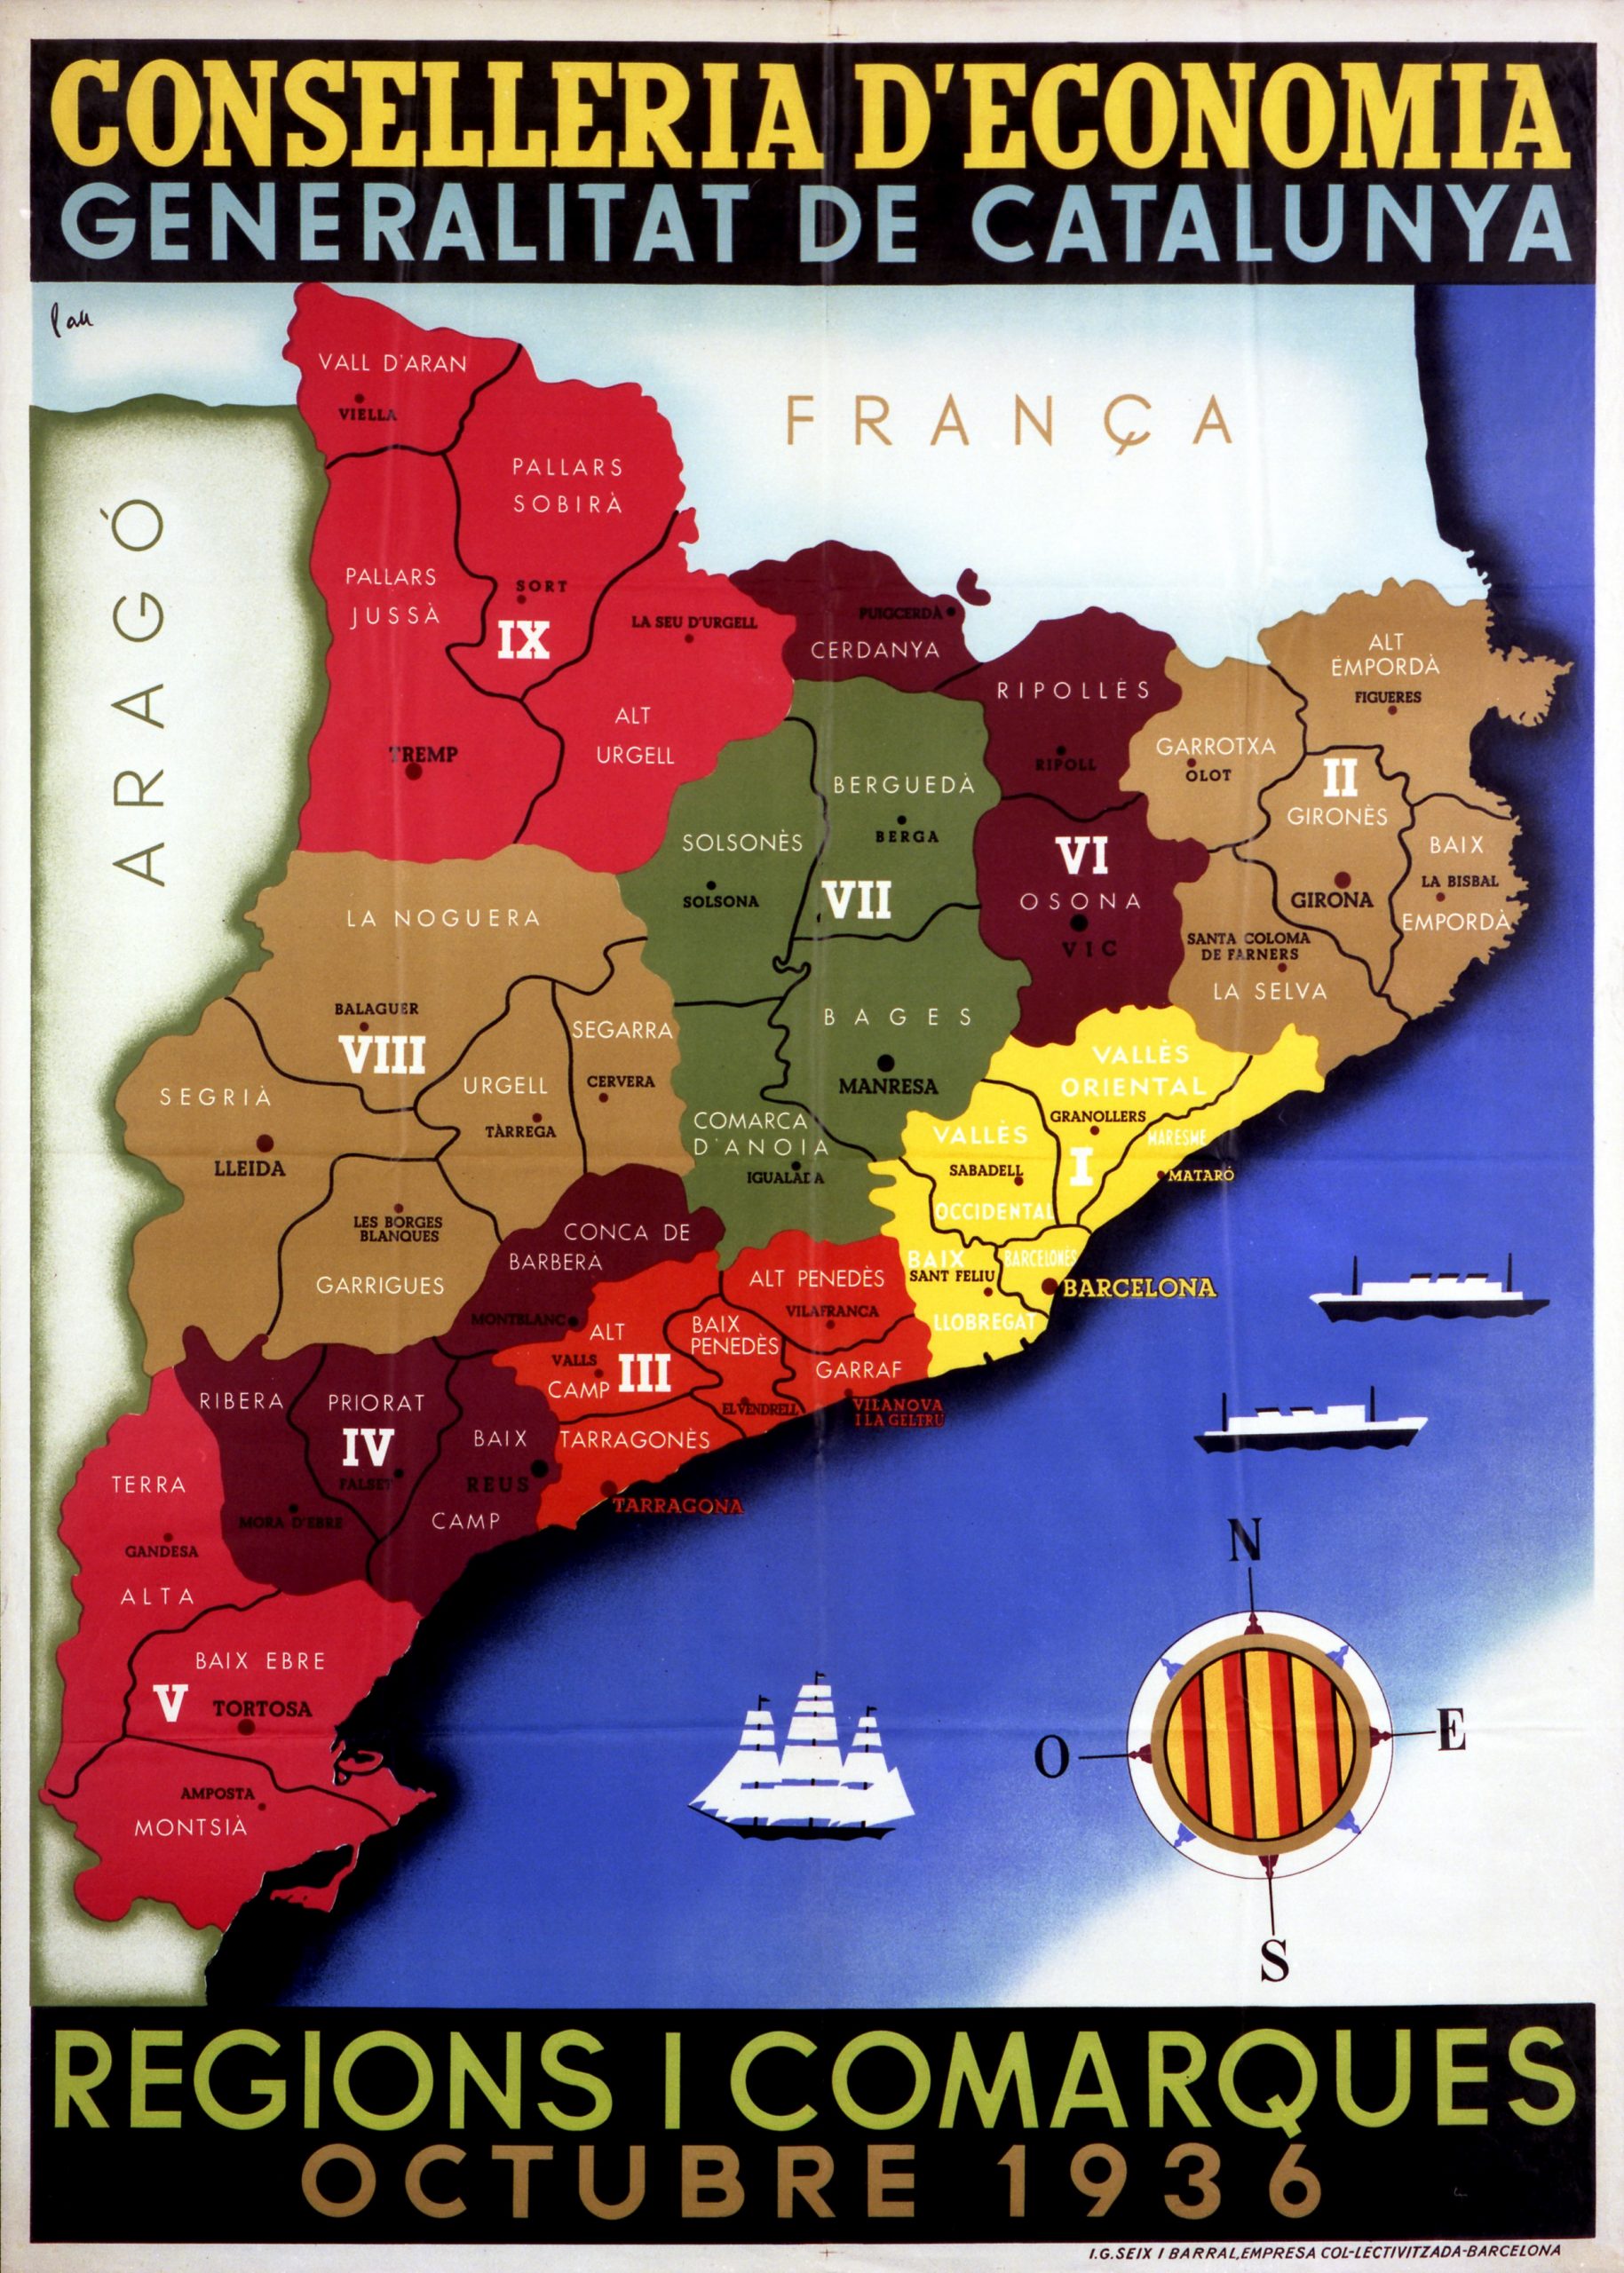 Regions i comarques: octubre 1936